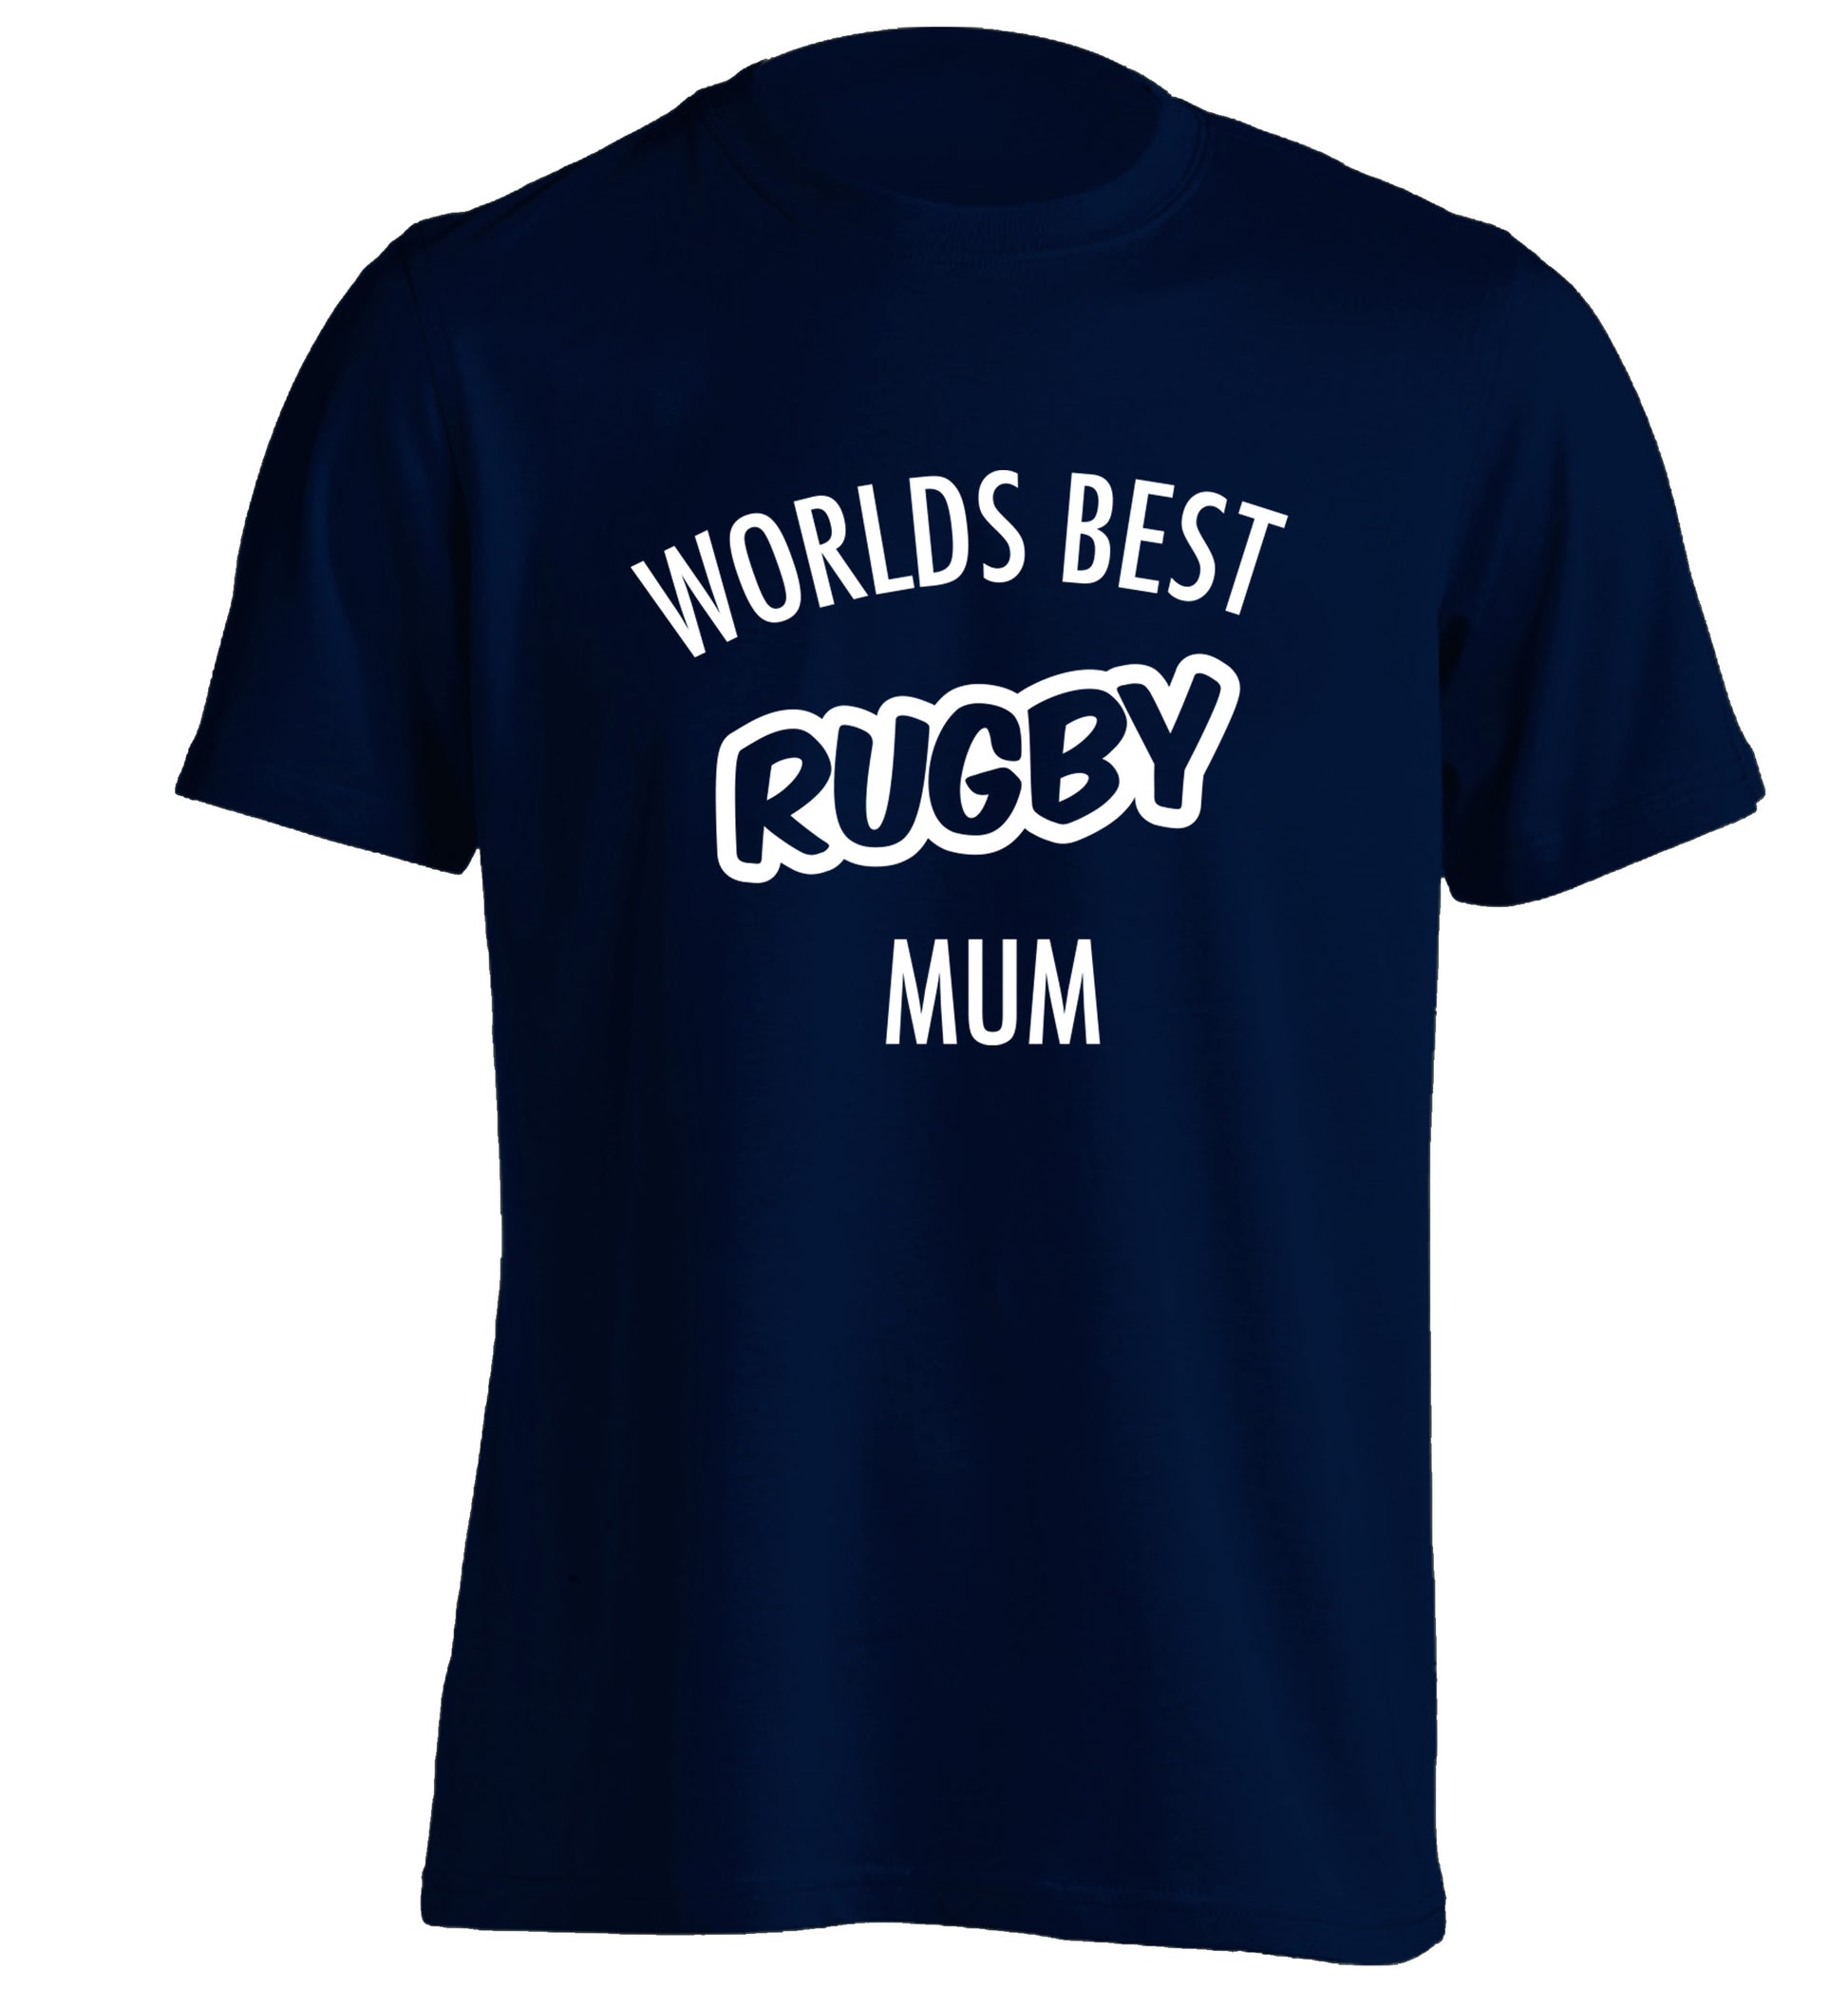 Worlds best rugby mum adults unisex navy Tshirt 2XL